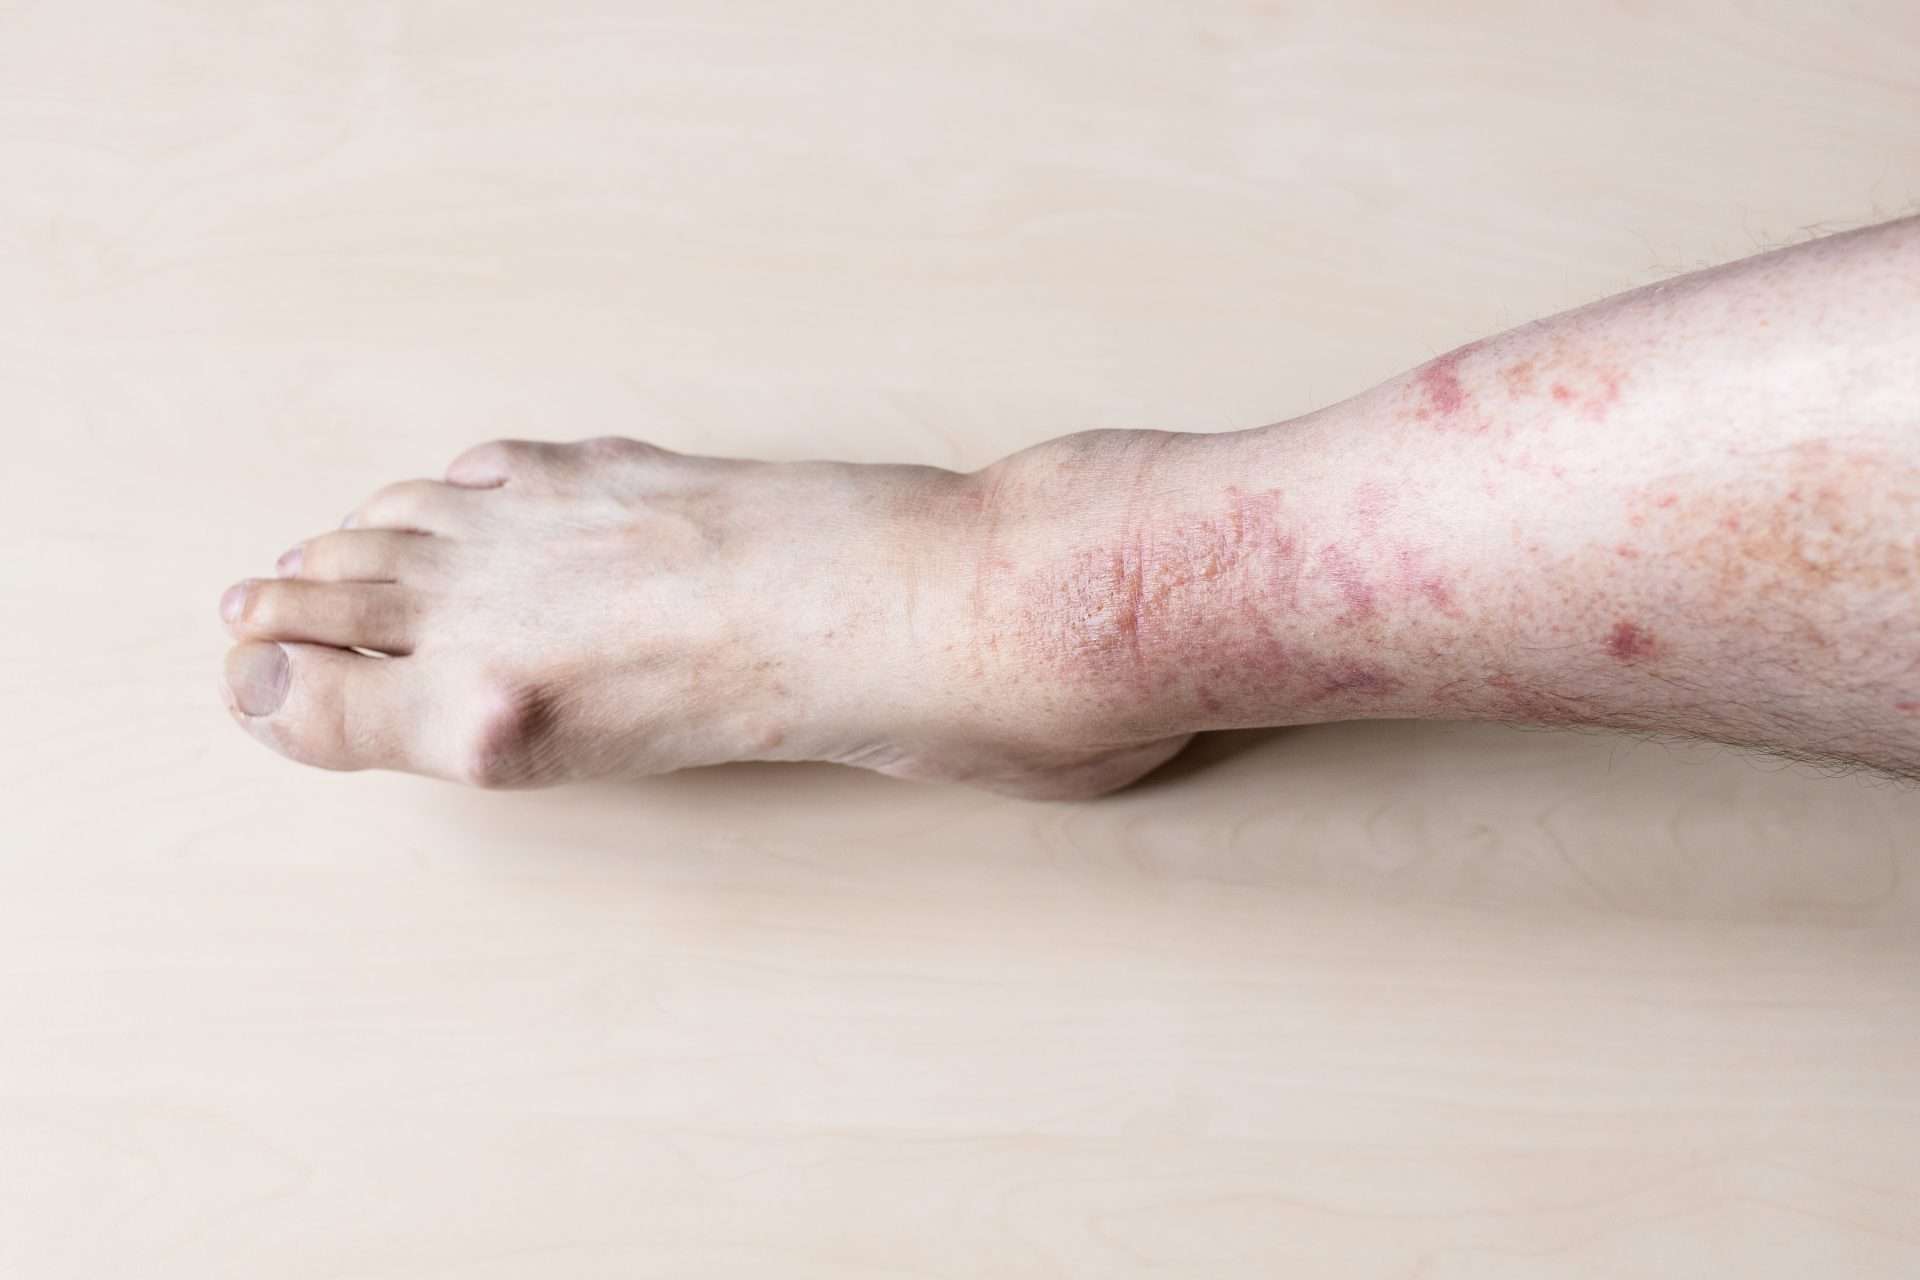 Poison ivy rash on skin